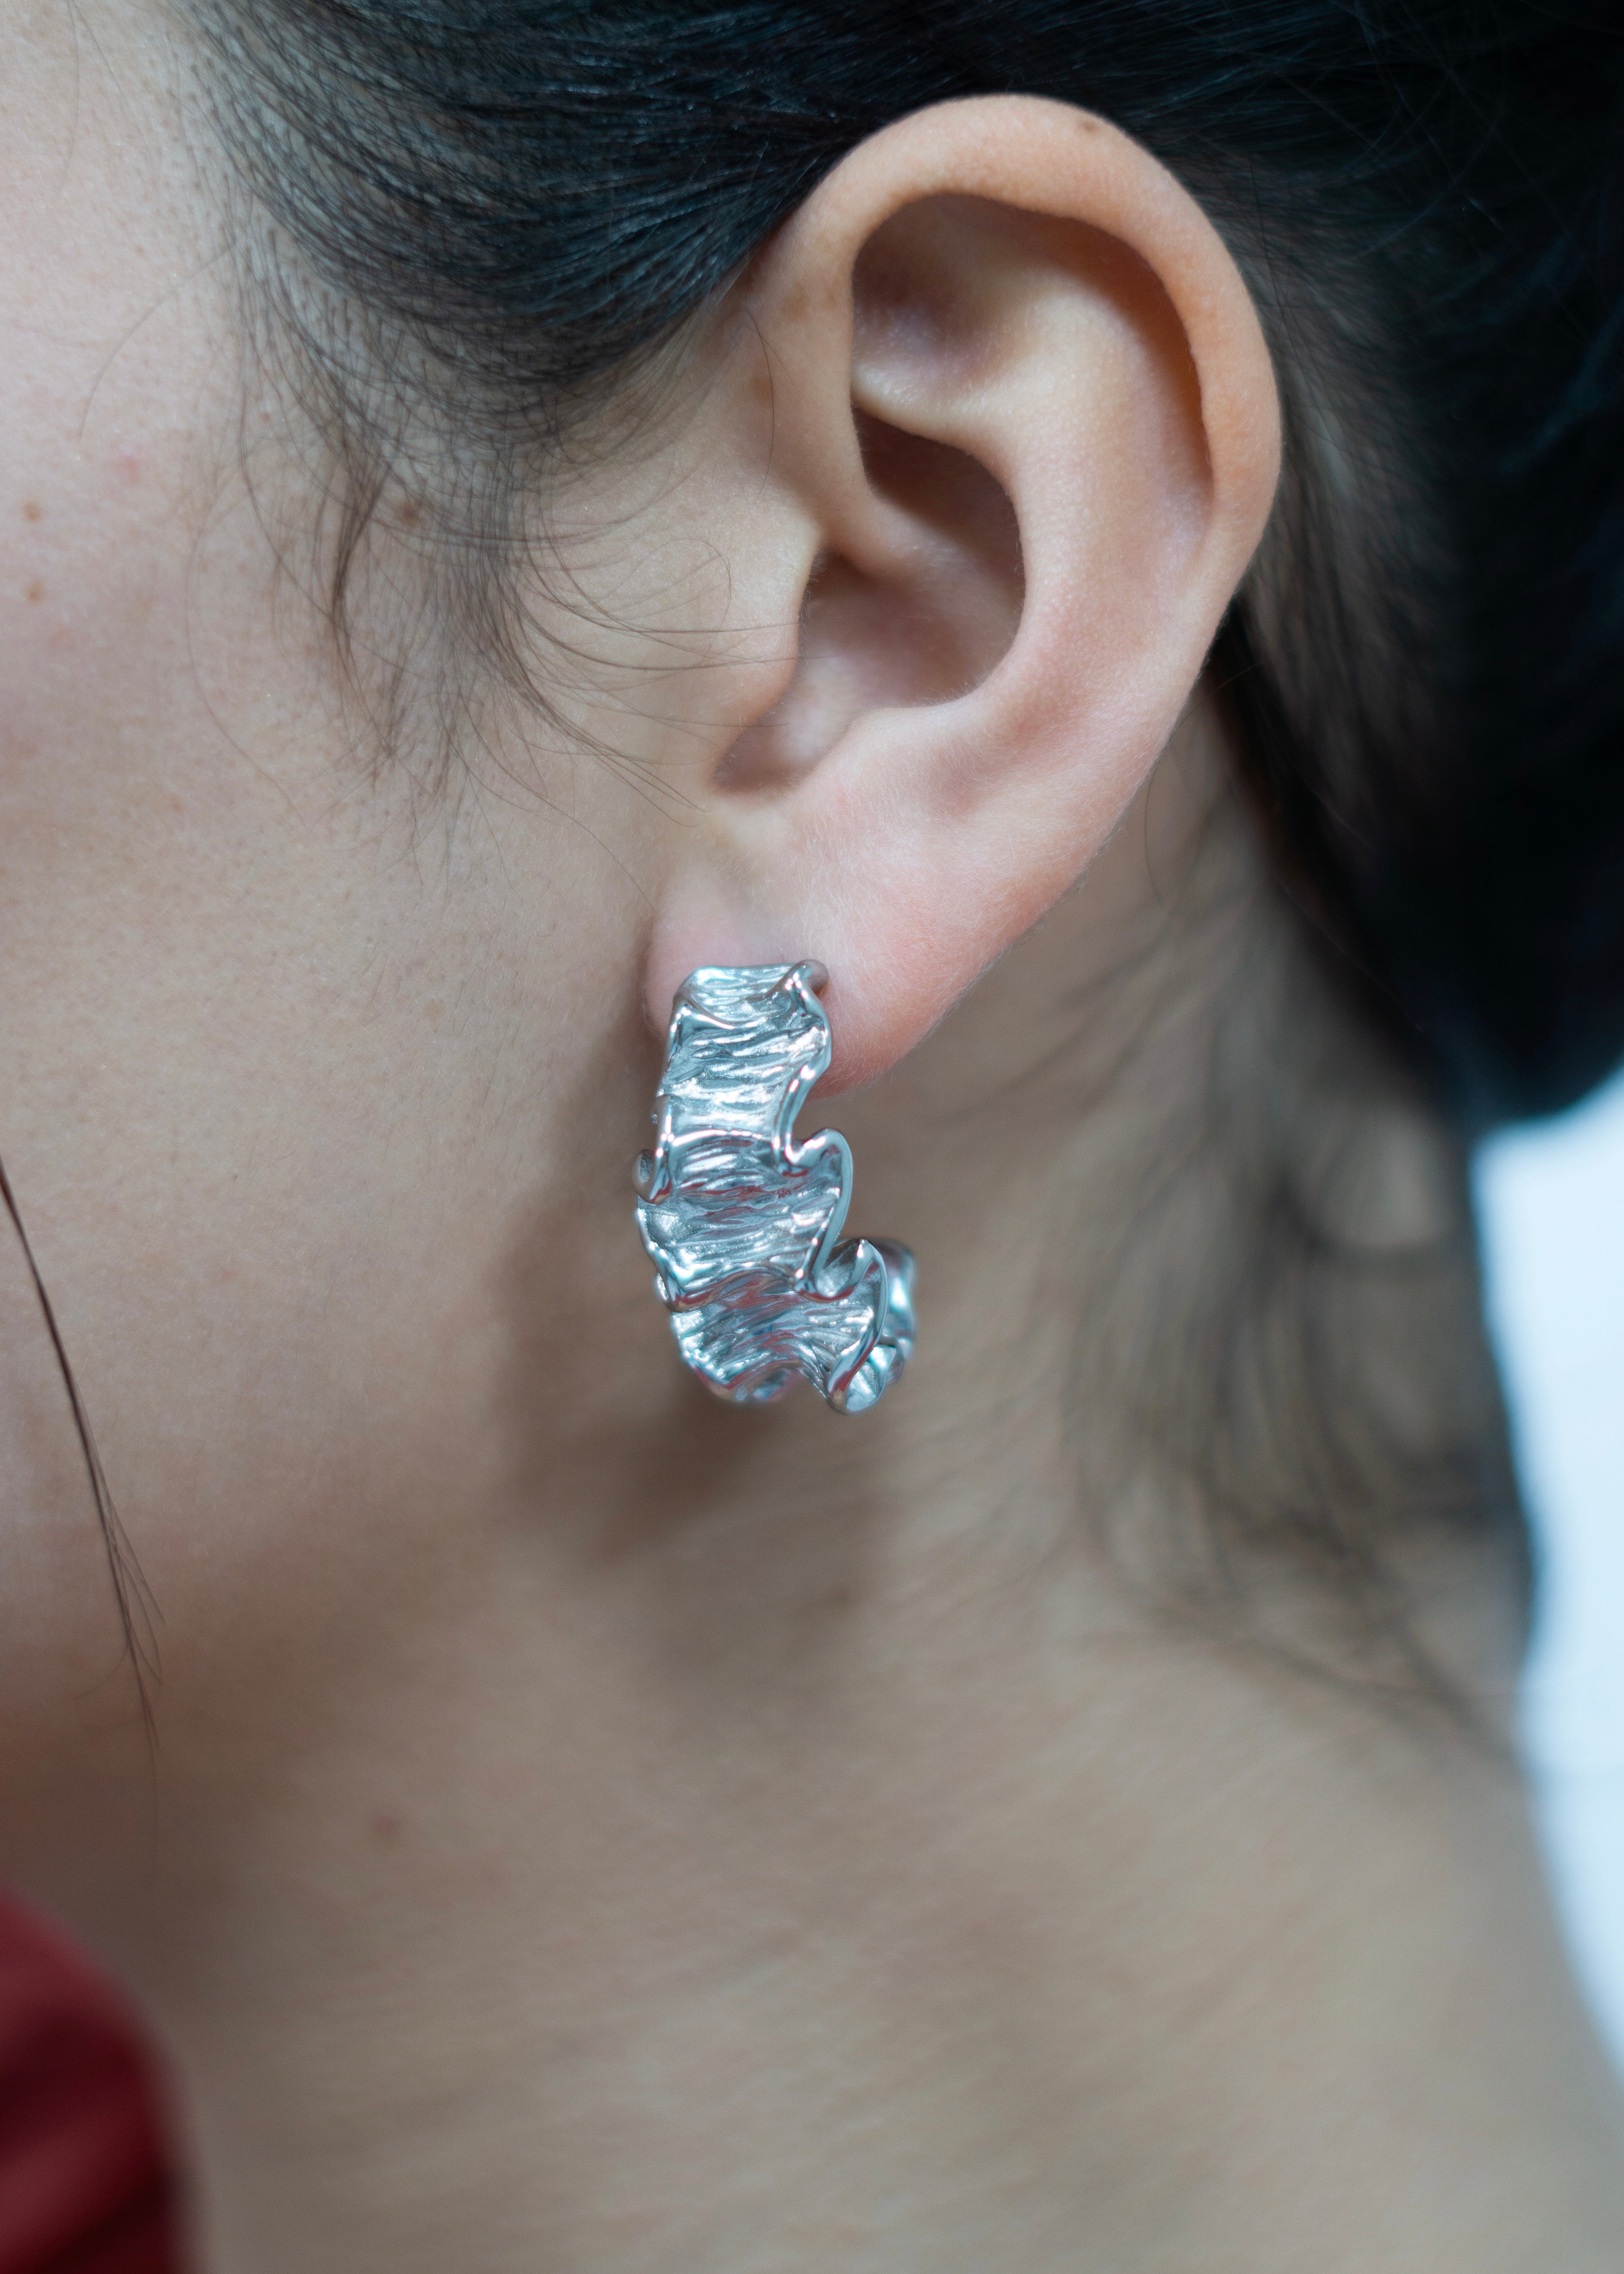 Coralie Earrings